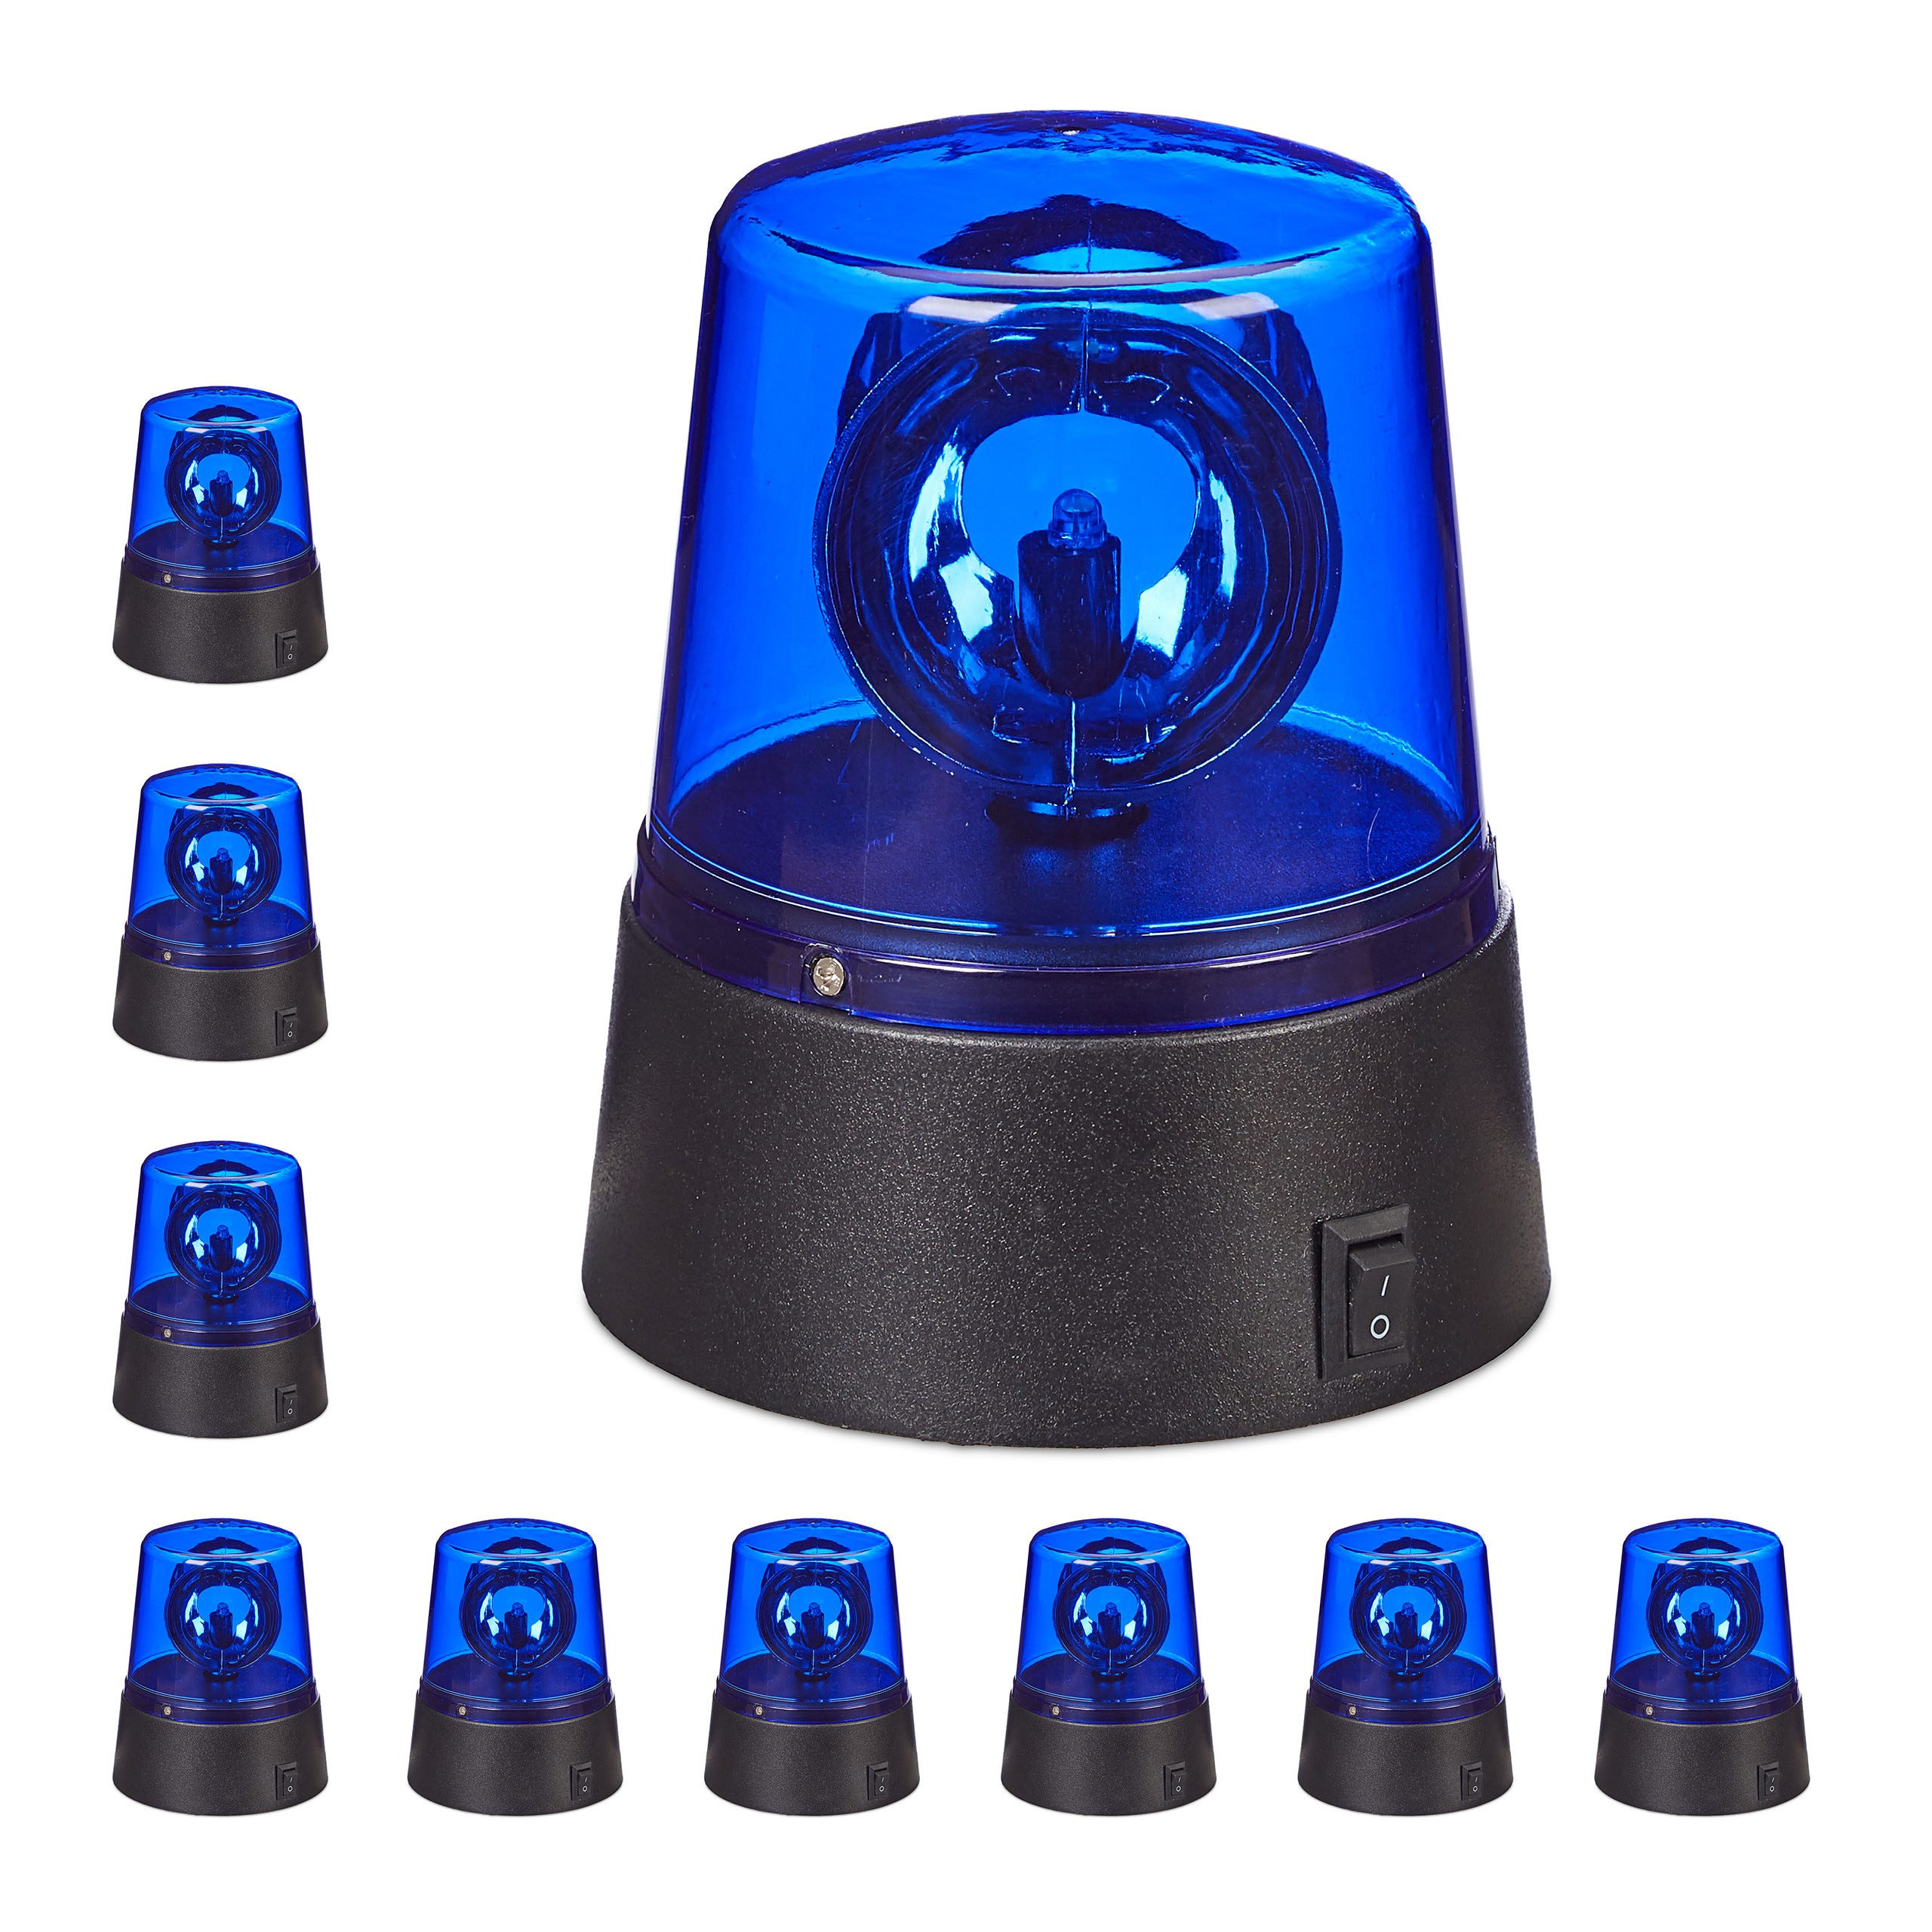 10x Polizia Party, LED Lampeggiante Blu con Riflettore Girevole a Batteria,  senza Fili, posizionabile ovunque, blu